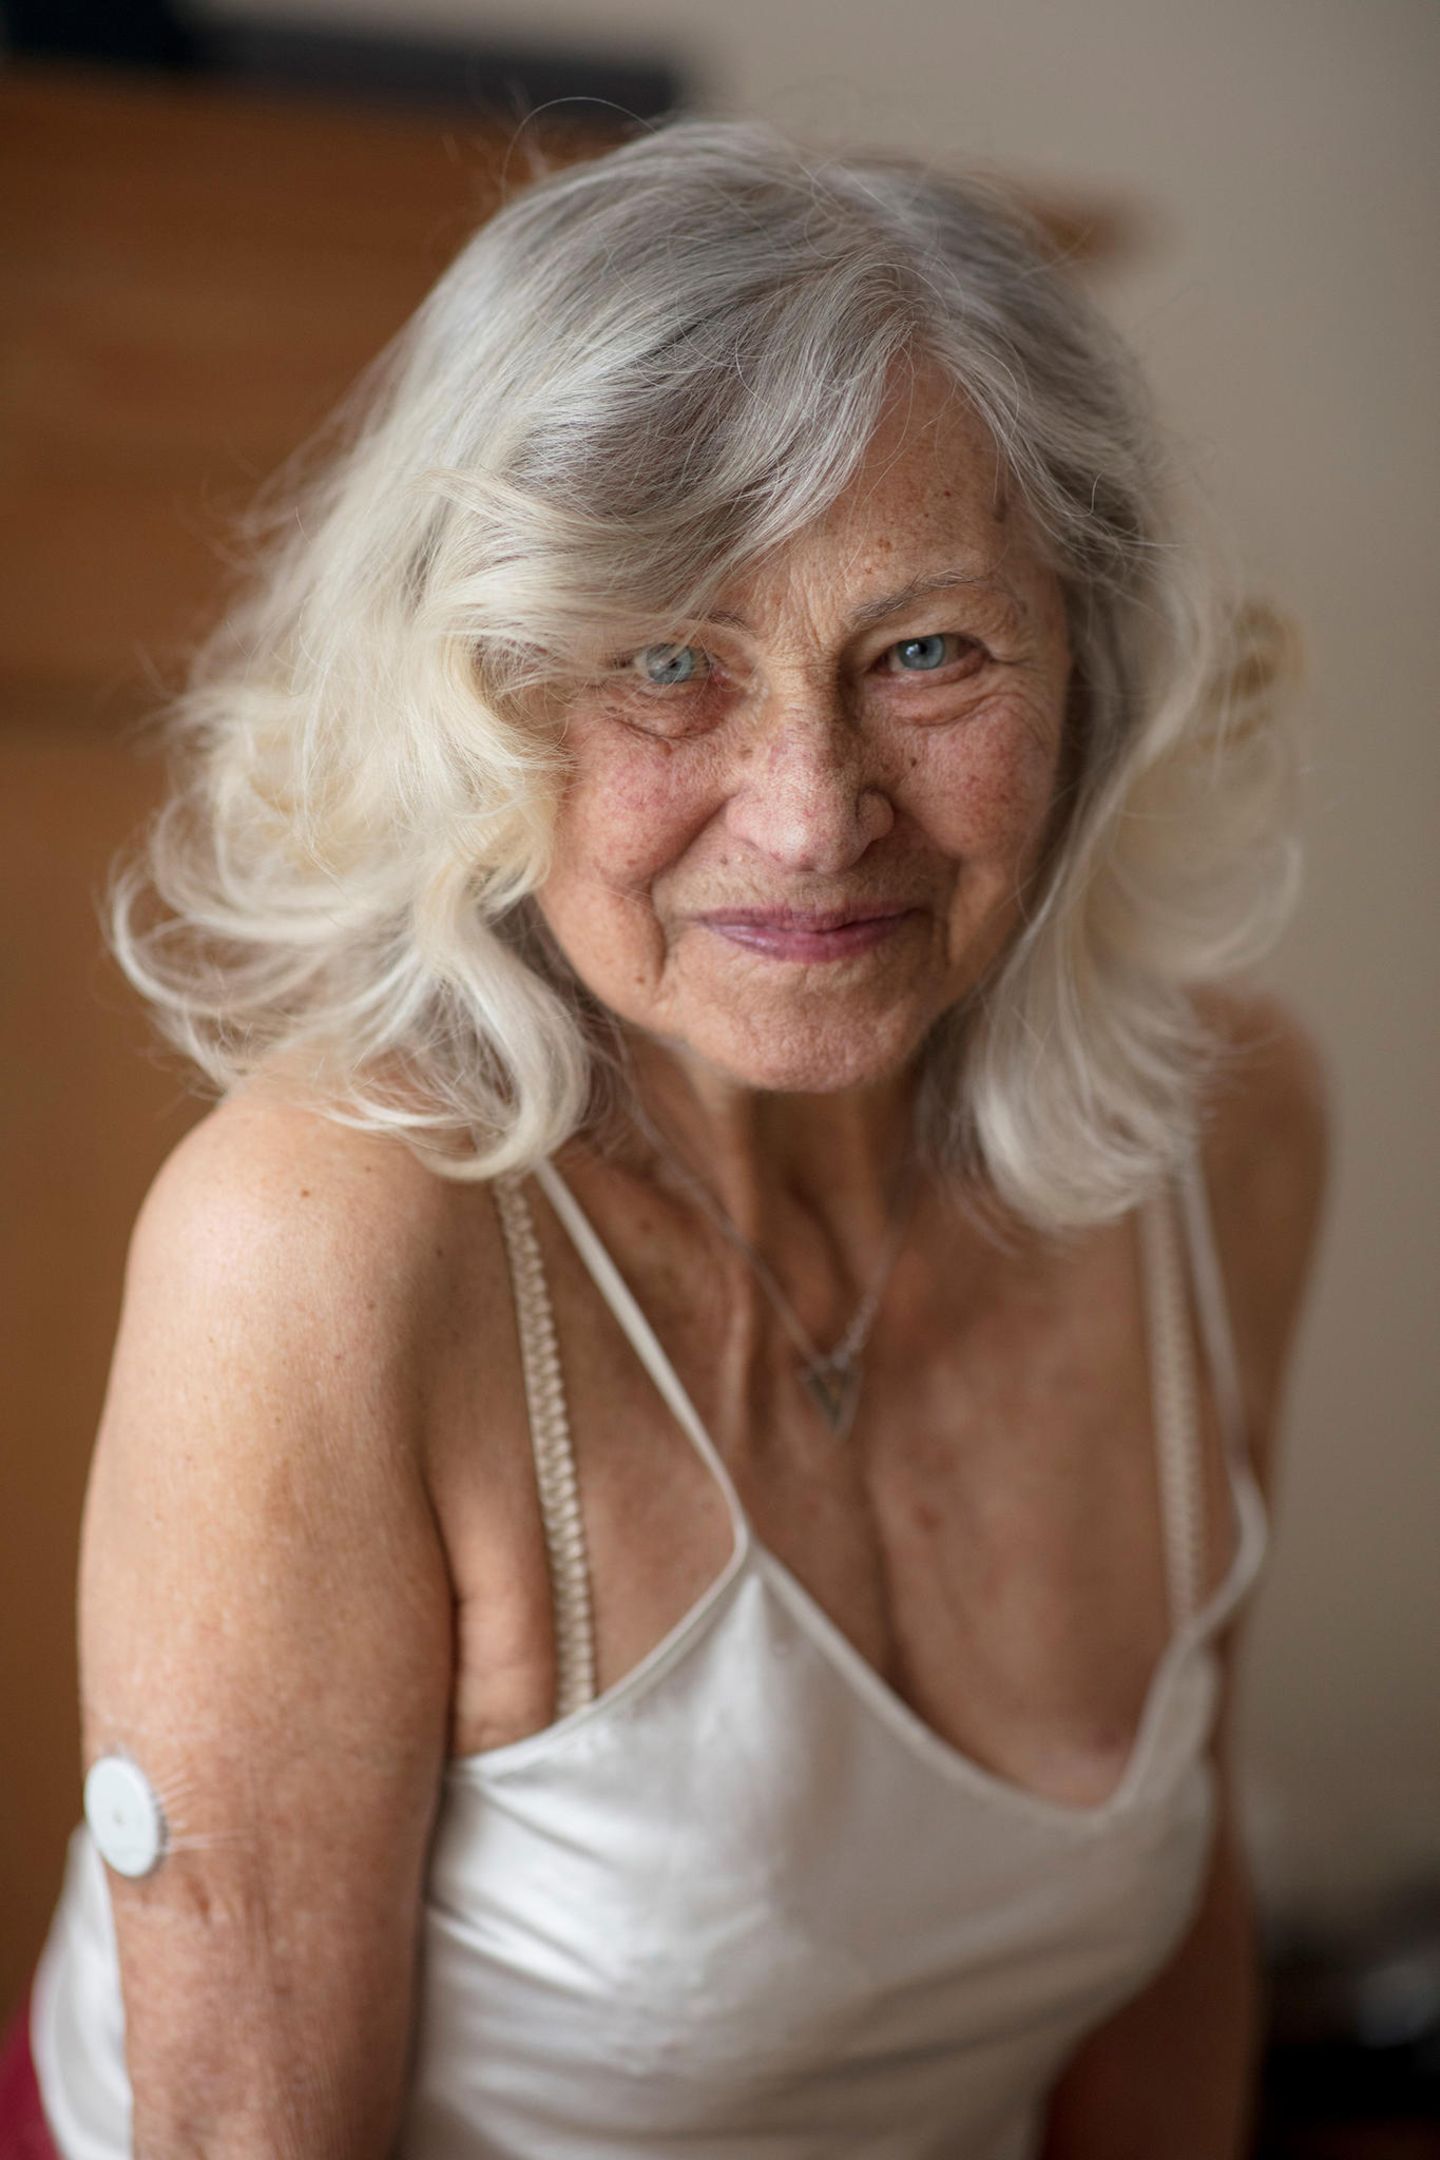 Fotowettbewerb VielfALT: Seniorin blickt in Kamera